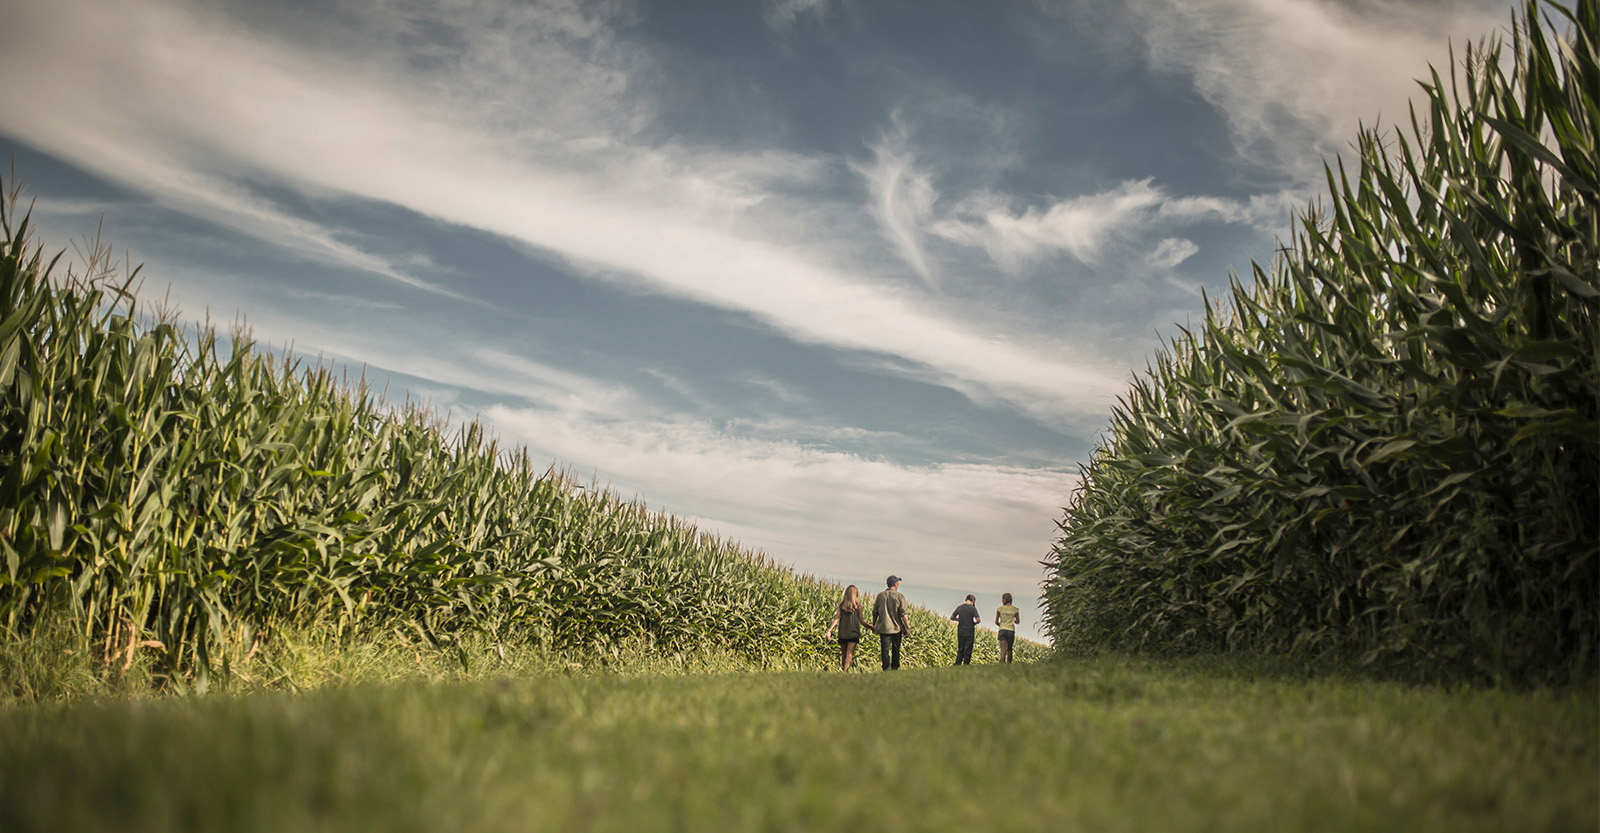 Family walking along the corn field